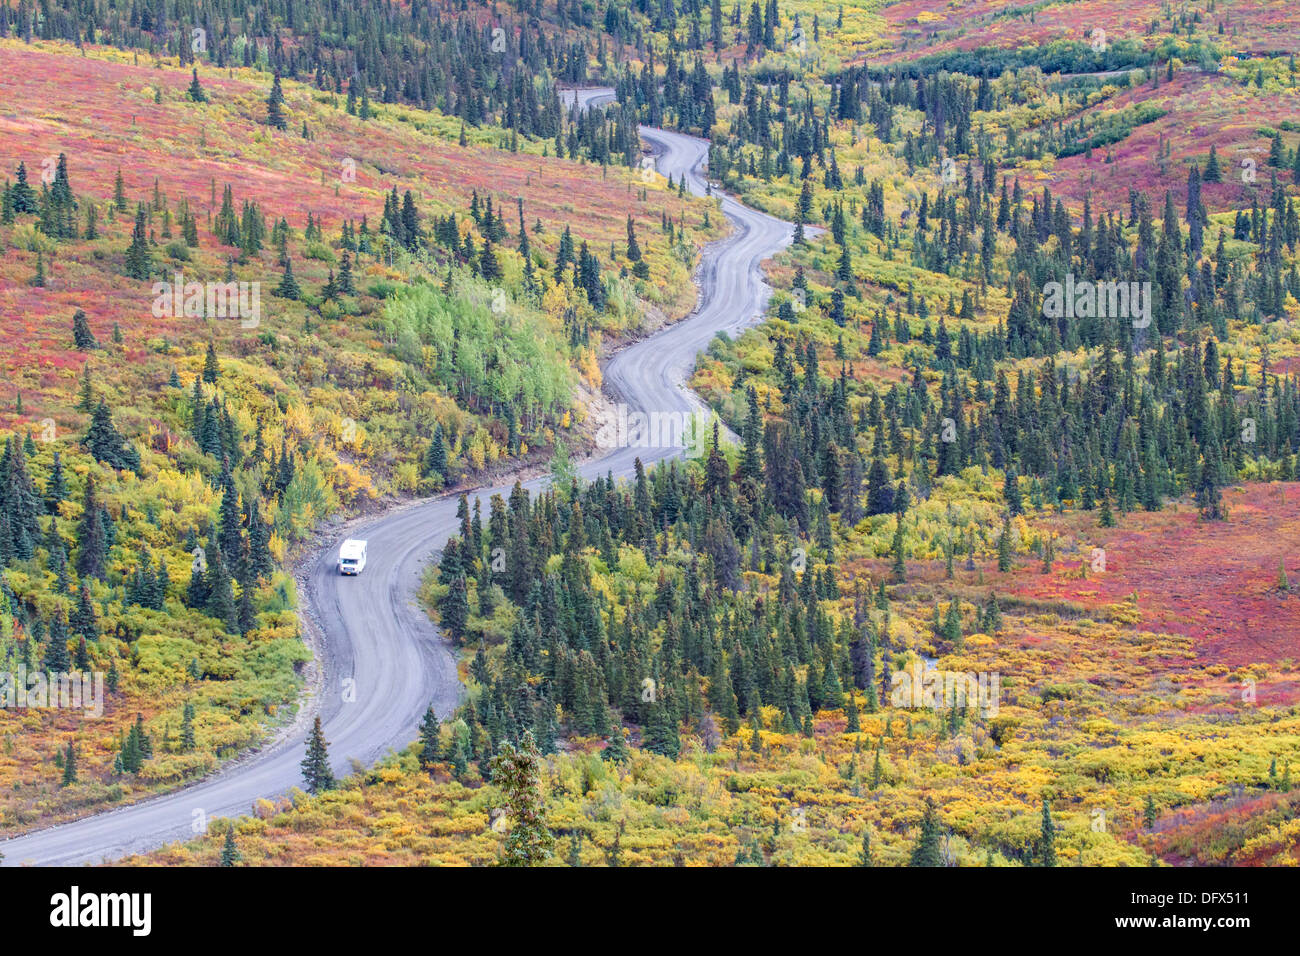 Winding road dans le parc national Denali en Alaska, les couleurs de l'automne flamboyant Banque D'Images